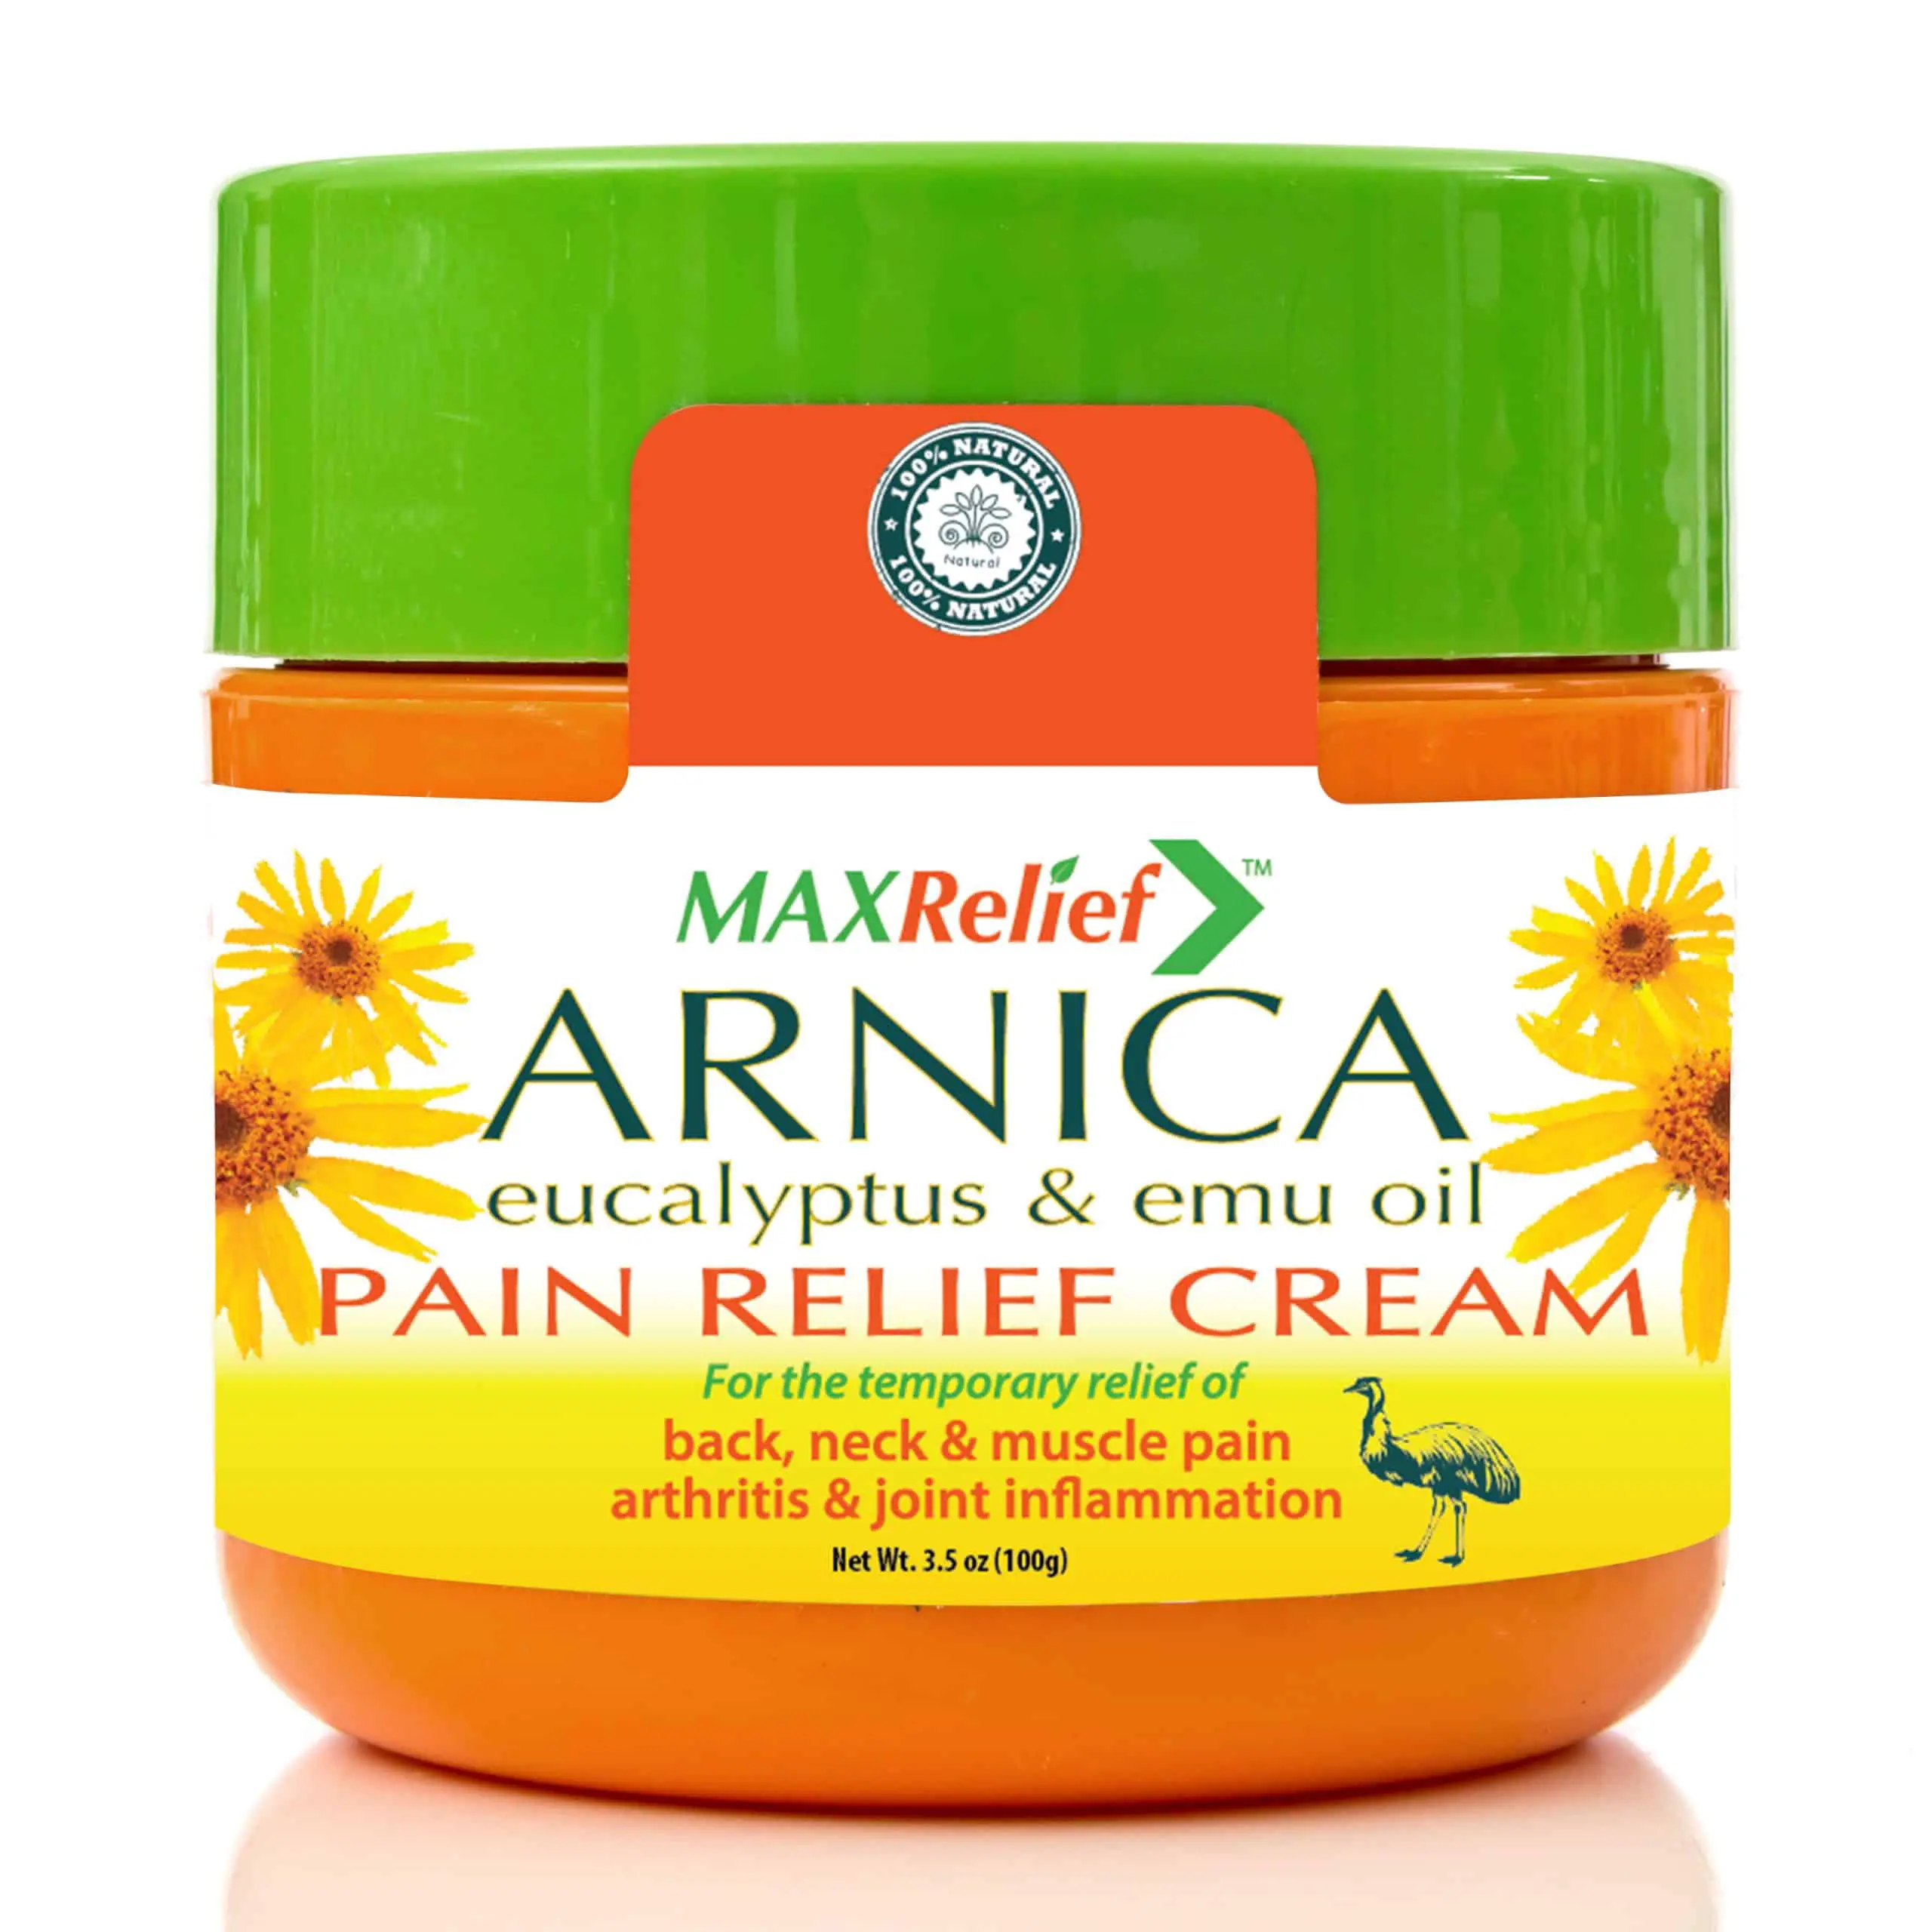 MaxRelief Arnica Pain Relief Cream